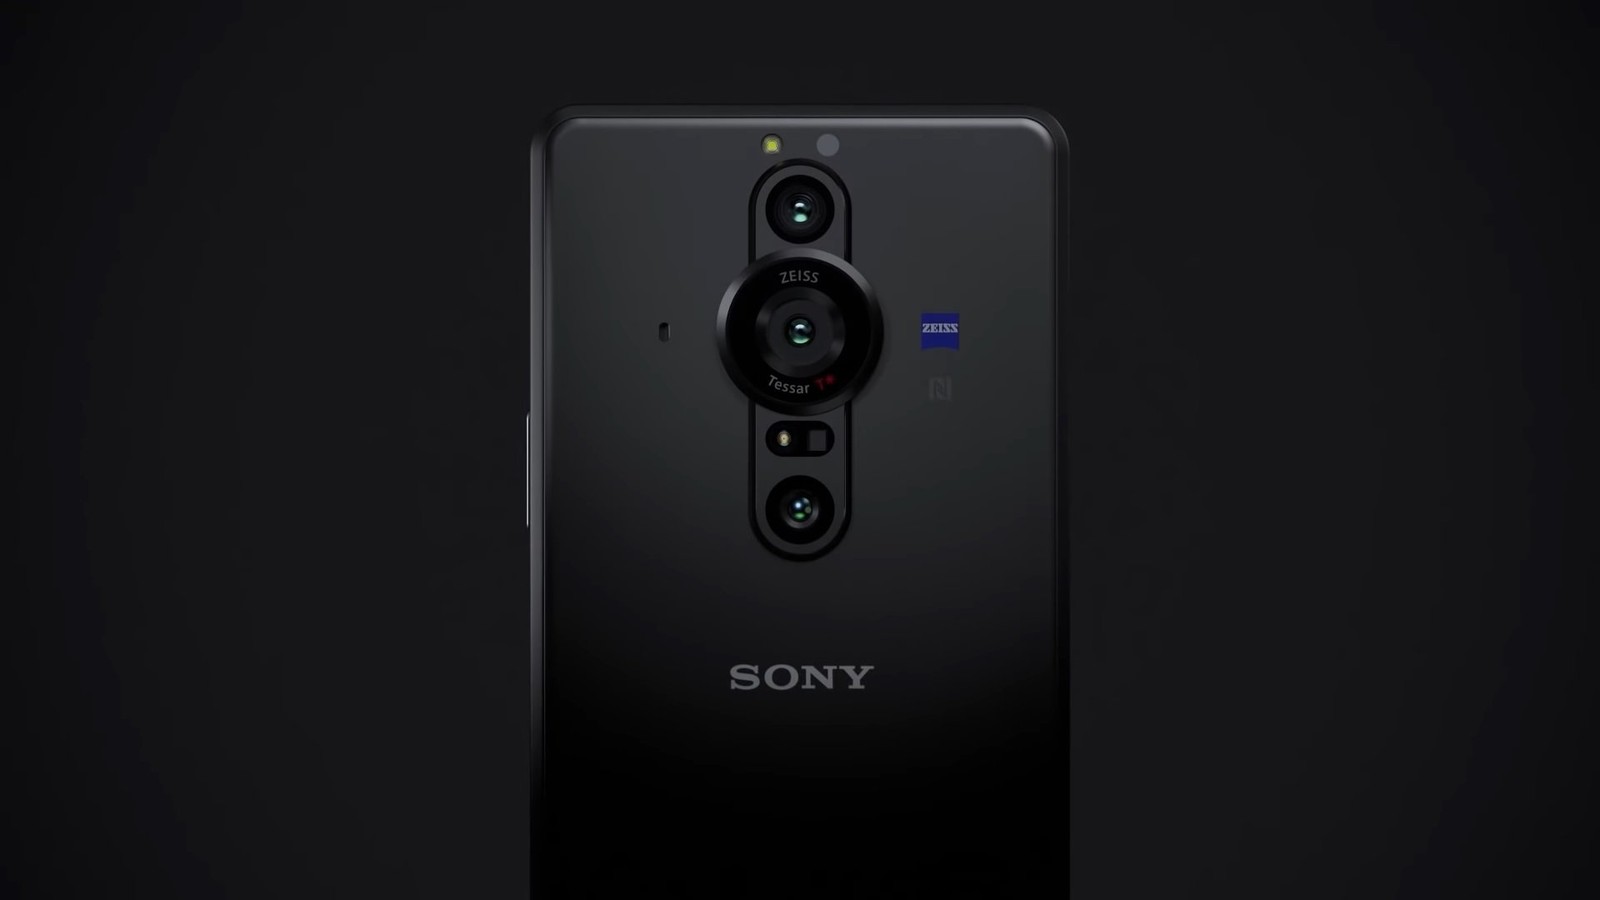 Sony Xperia PRO-I trafiła do Polski, ale czy ktoś zechce ją kupić w takiej cenie?